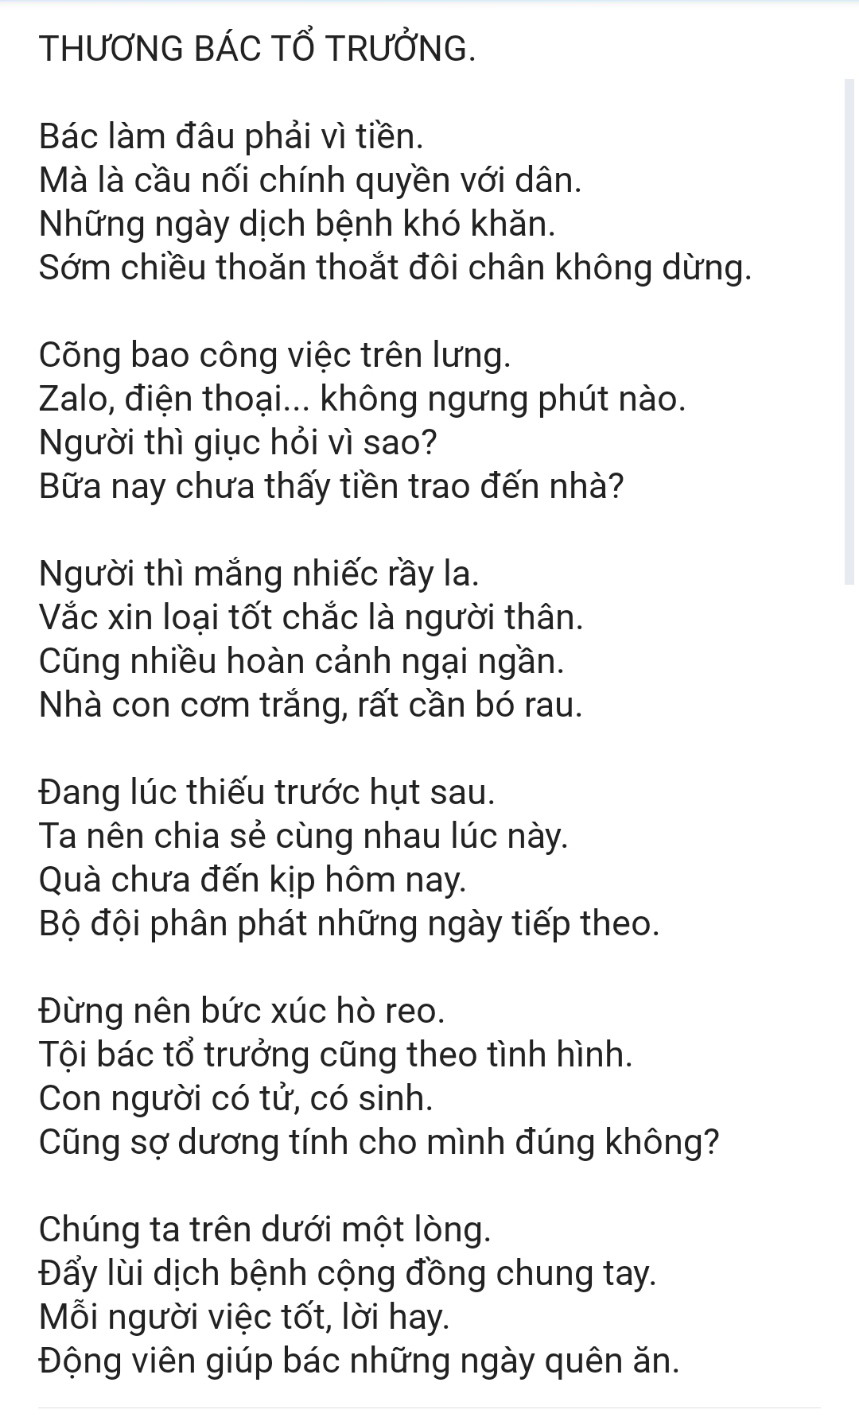 Bài thơ của Ủy ban nhân dân xã Phong Phú, huyện Bình Chánh gửi tặng các cô chú tổ trưởng trên địa bàn nhân ngày Quốc khánh Việt Nam